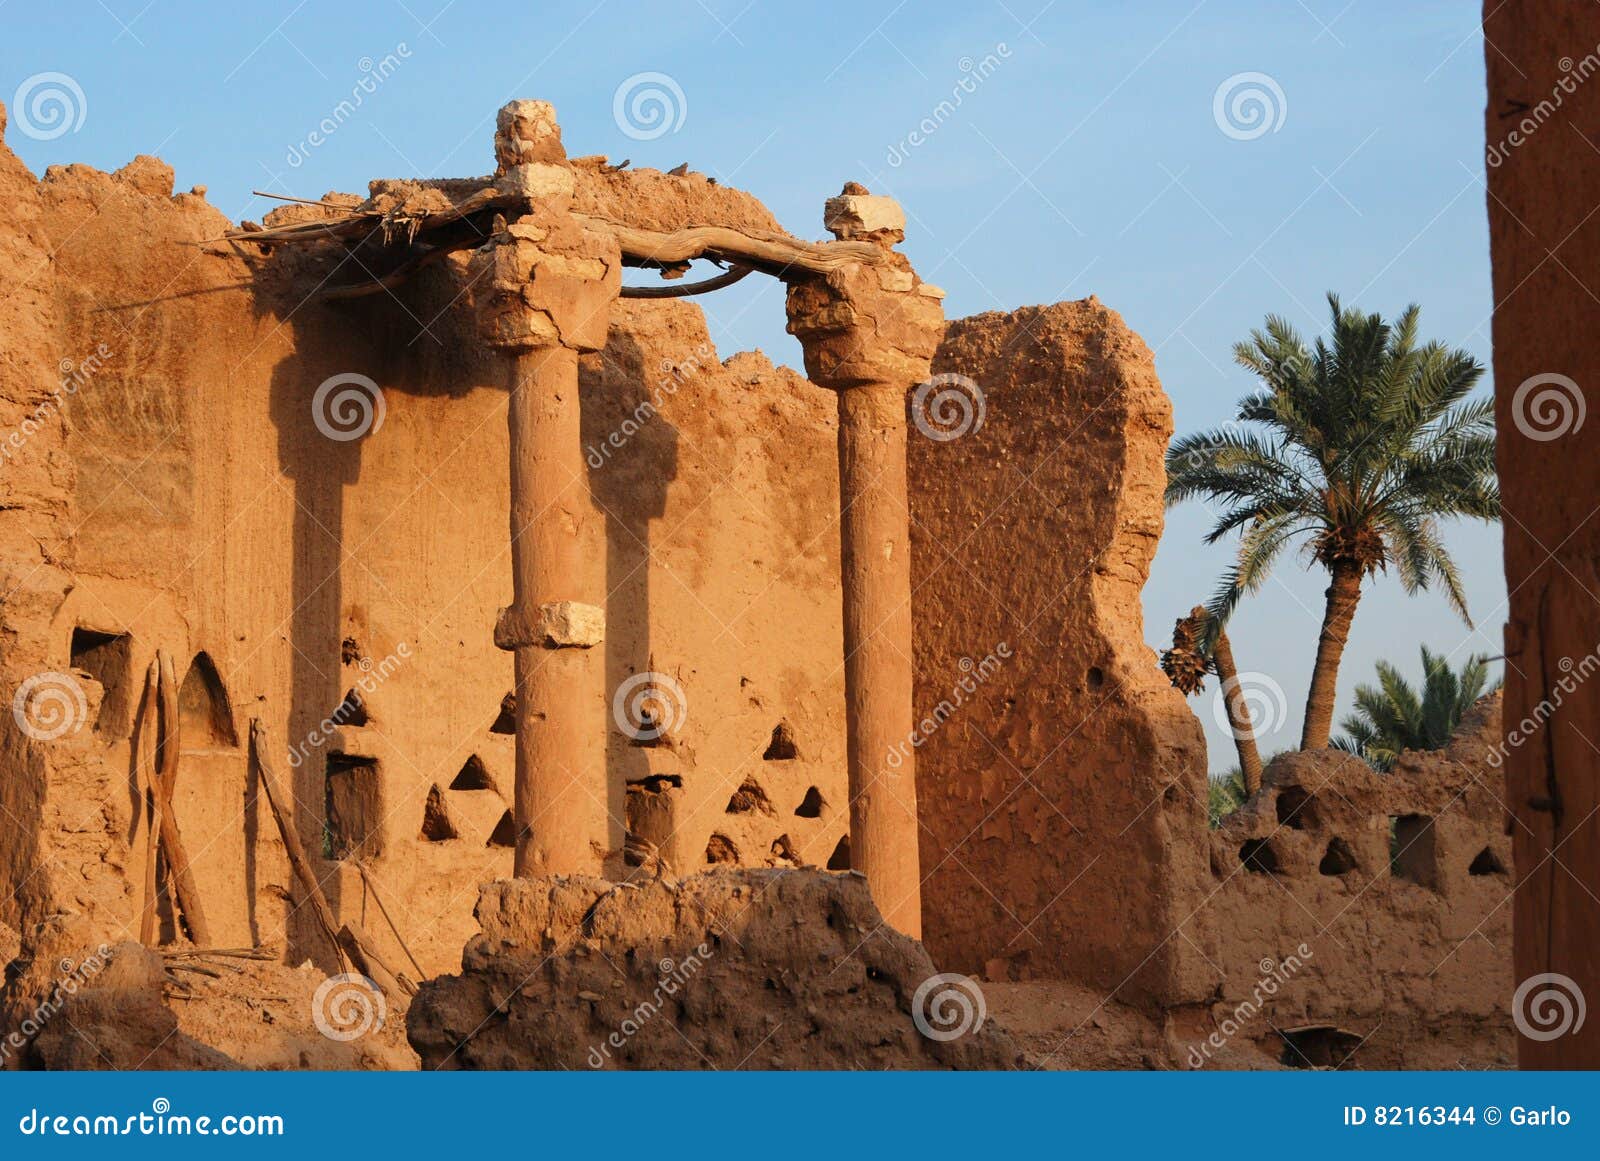 ruins of old diriyah - saudi arabia